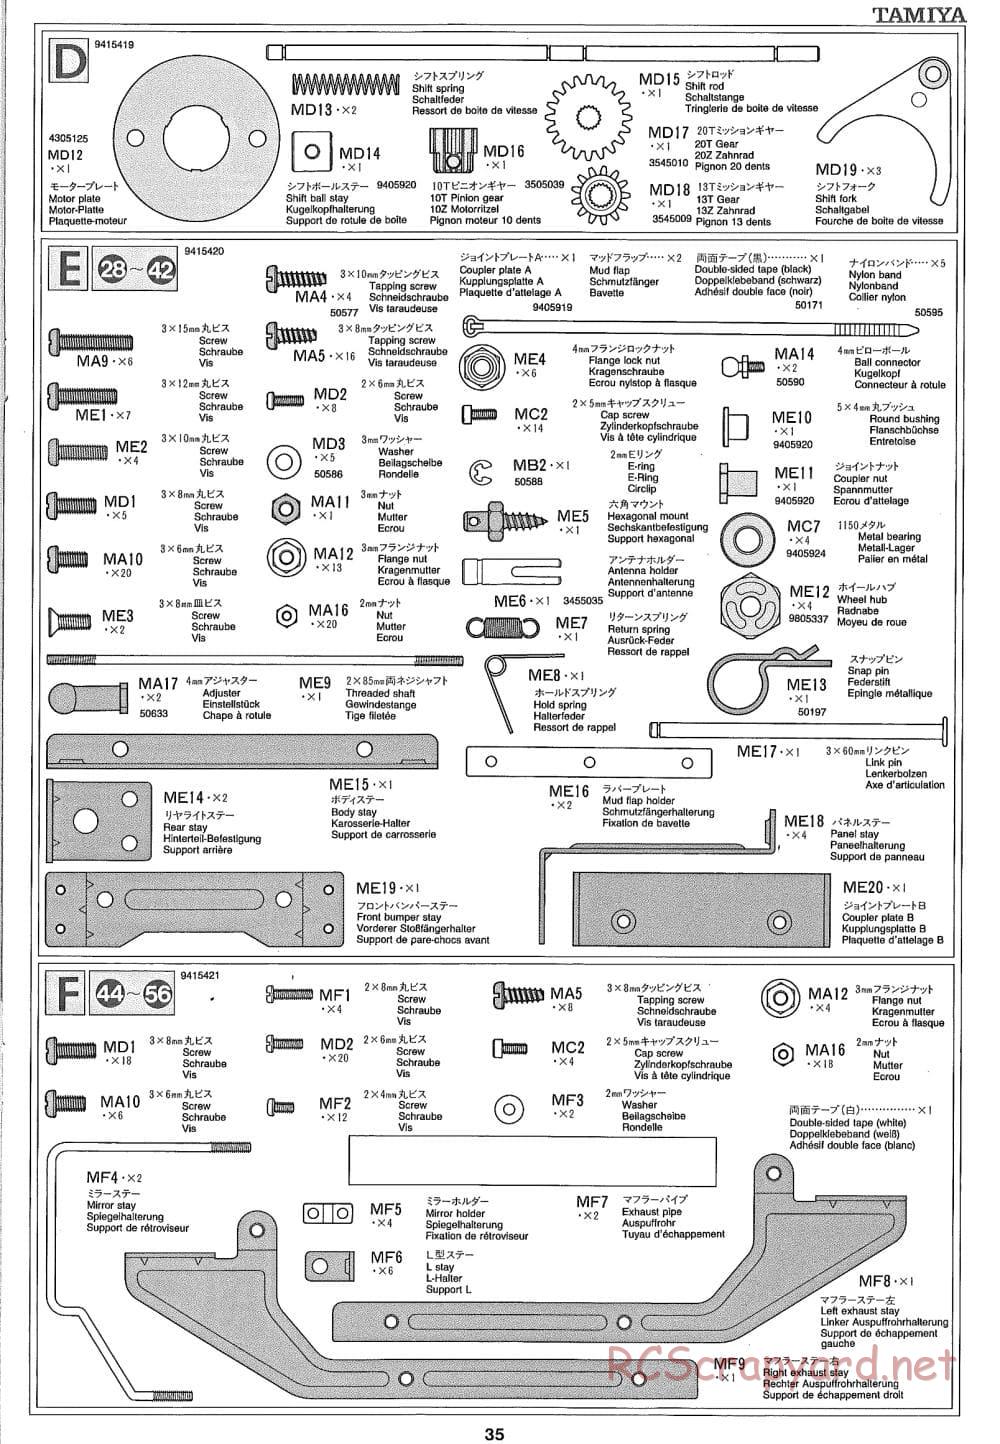 Tamiya - Ford Aeromax - Manual - Page 35